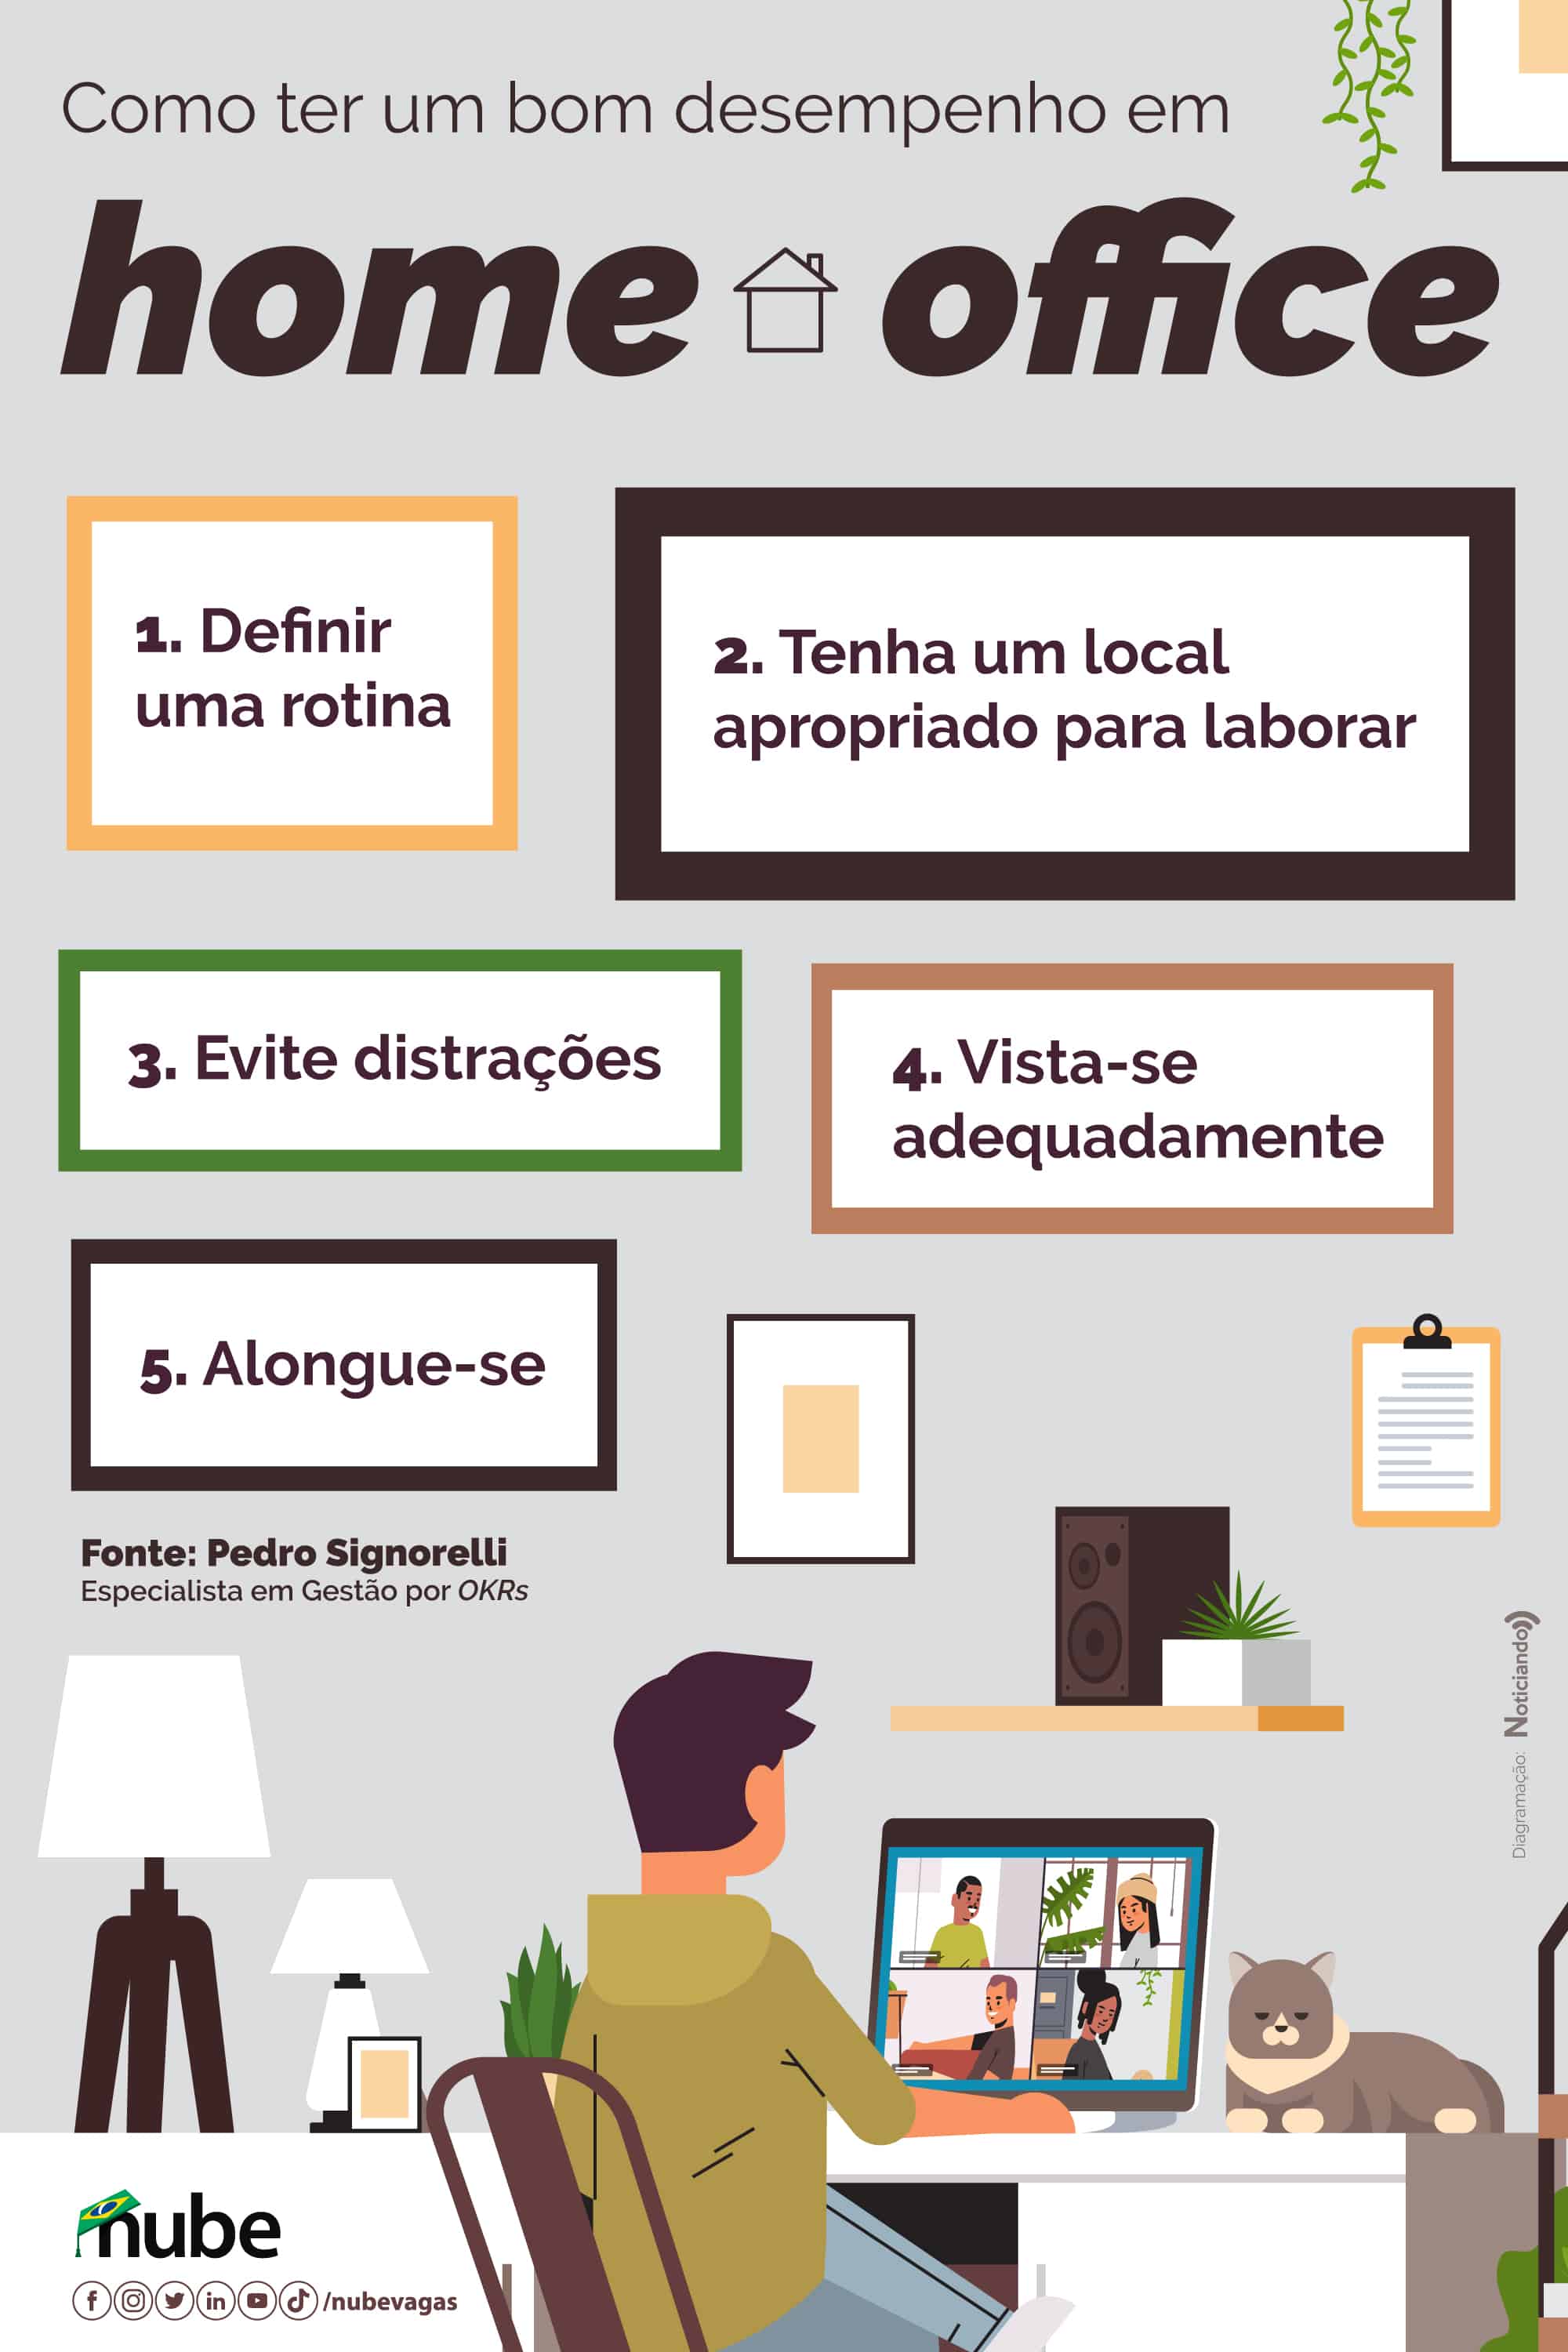 infográfico elencando cinco dicas para ter bom desempenho no home office